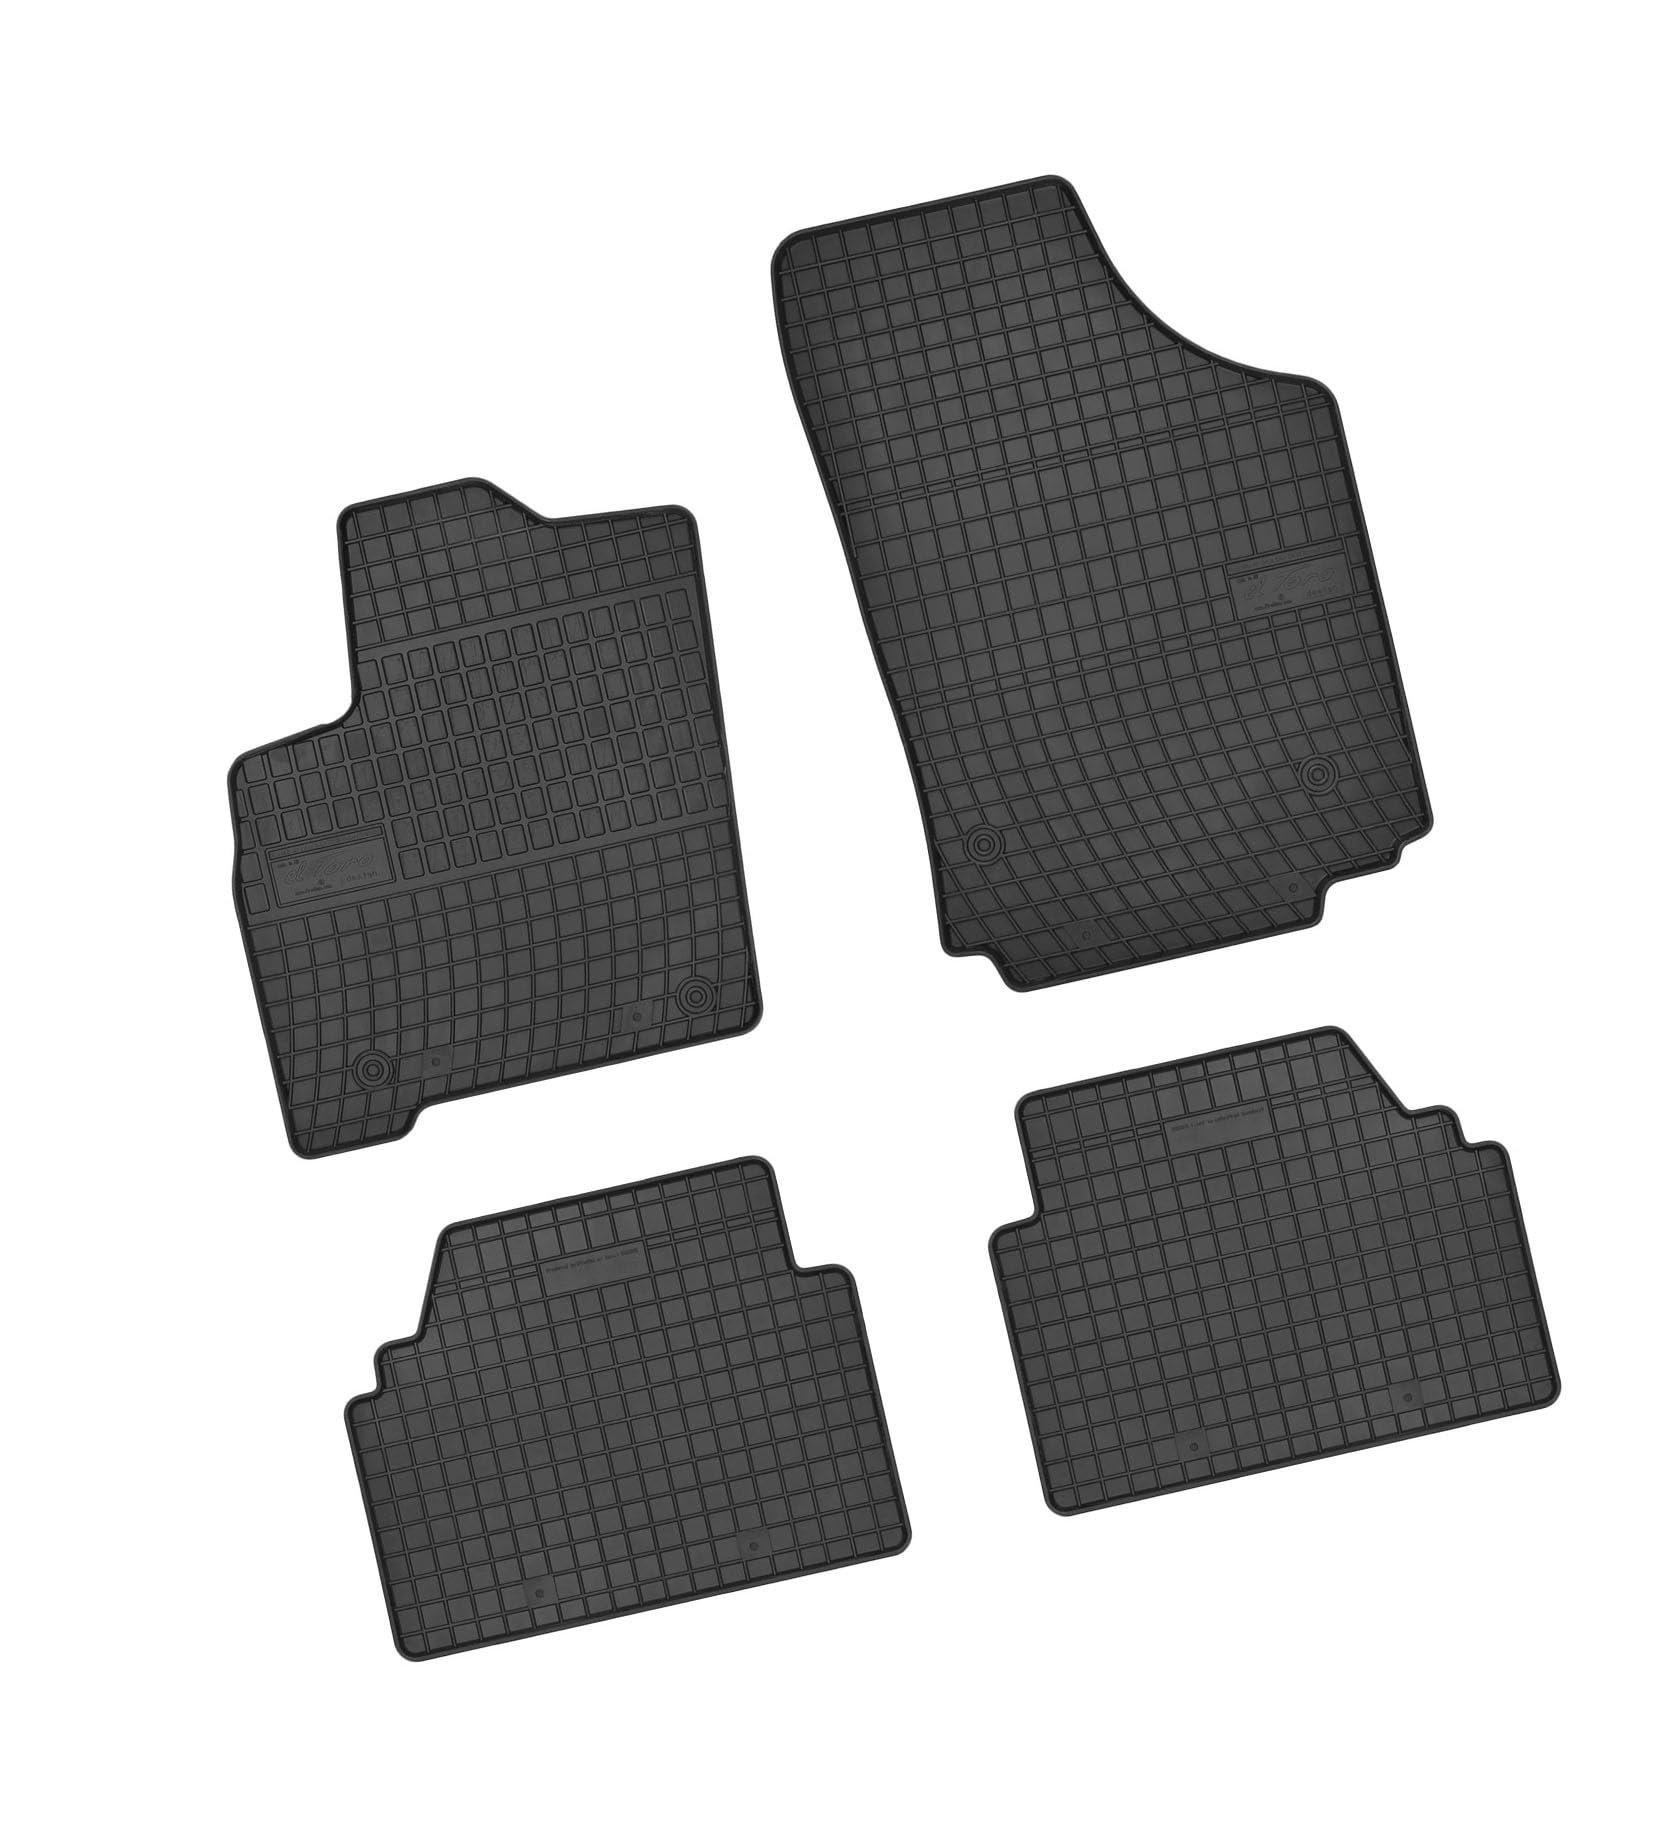 Bär-AfC OP02827 Gummimatten Auto Fußmatten Schwarz, Erhöhter Rand, Set 4-teilig, Passgenau für Modell Siehe Details von Bär-AfC